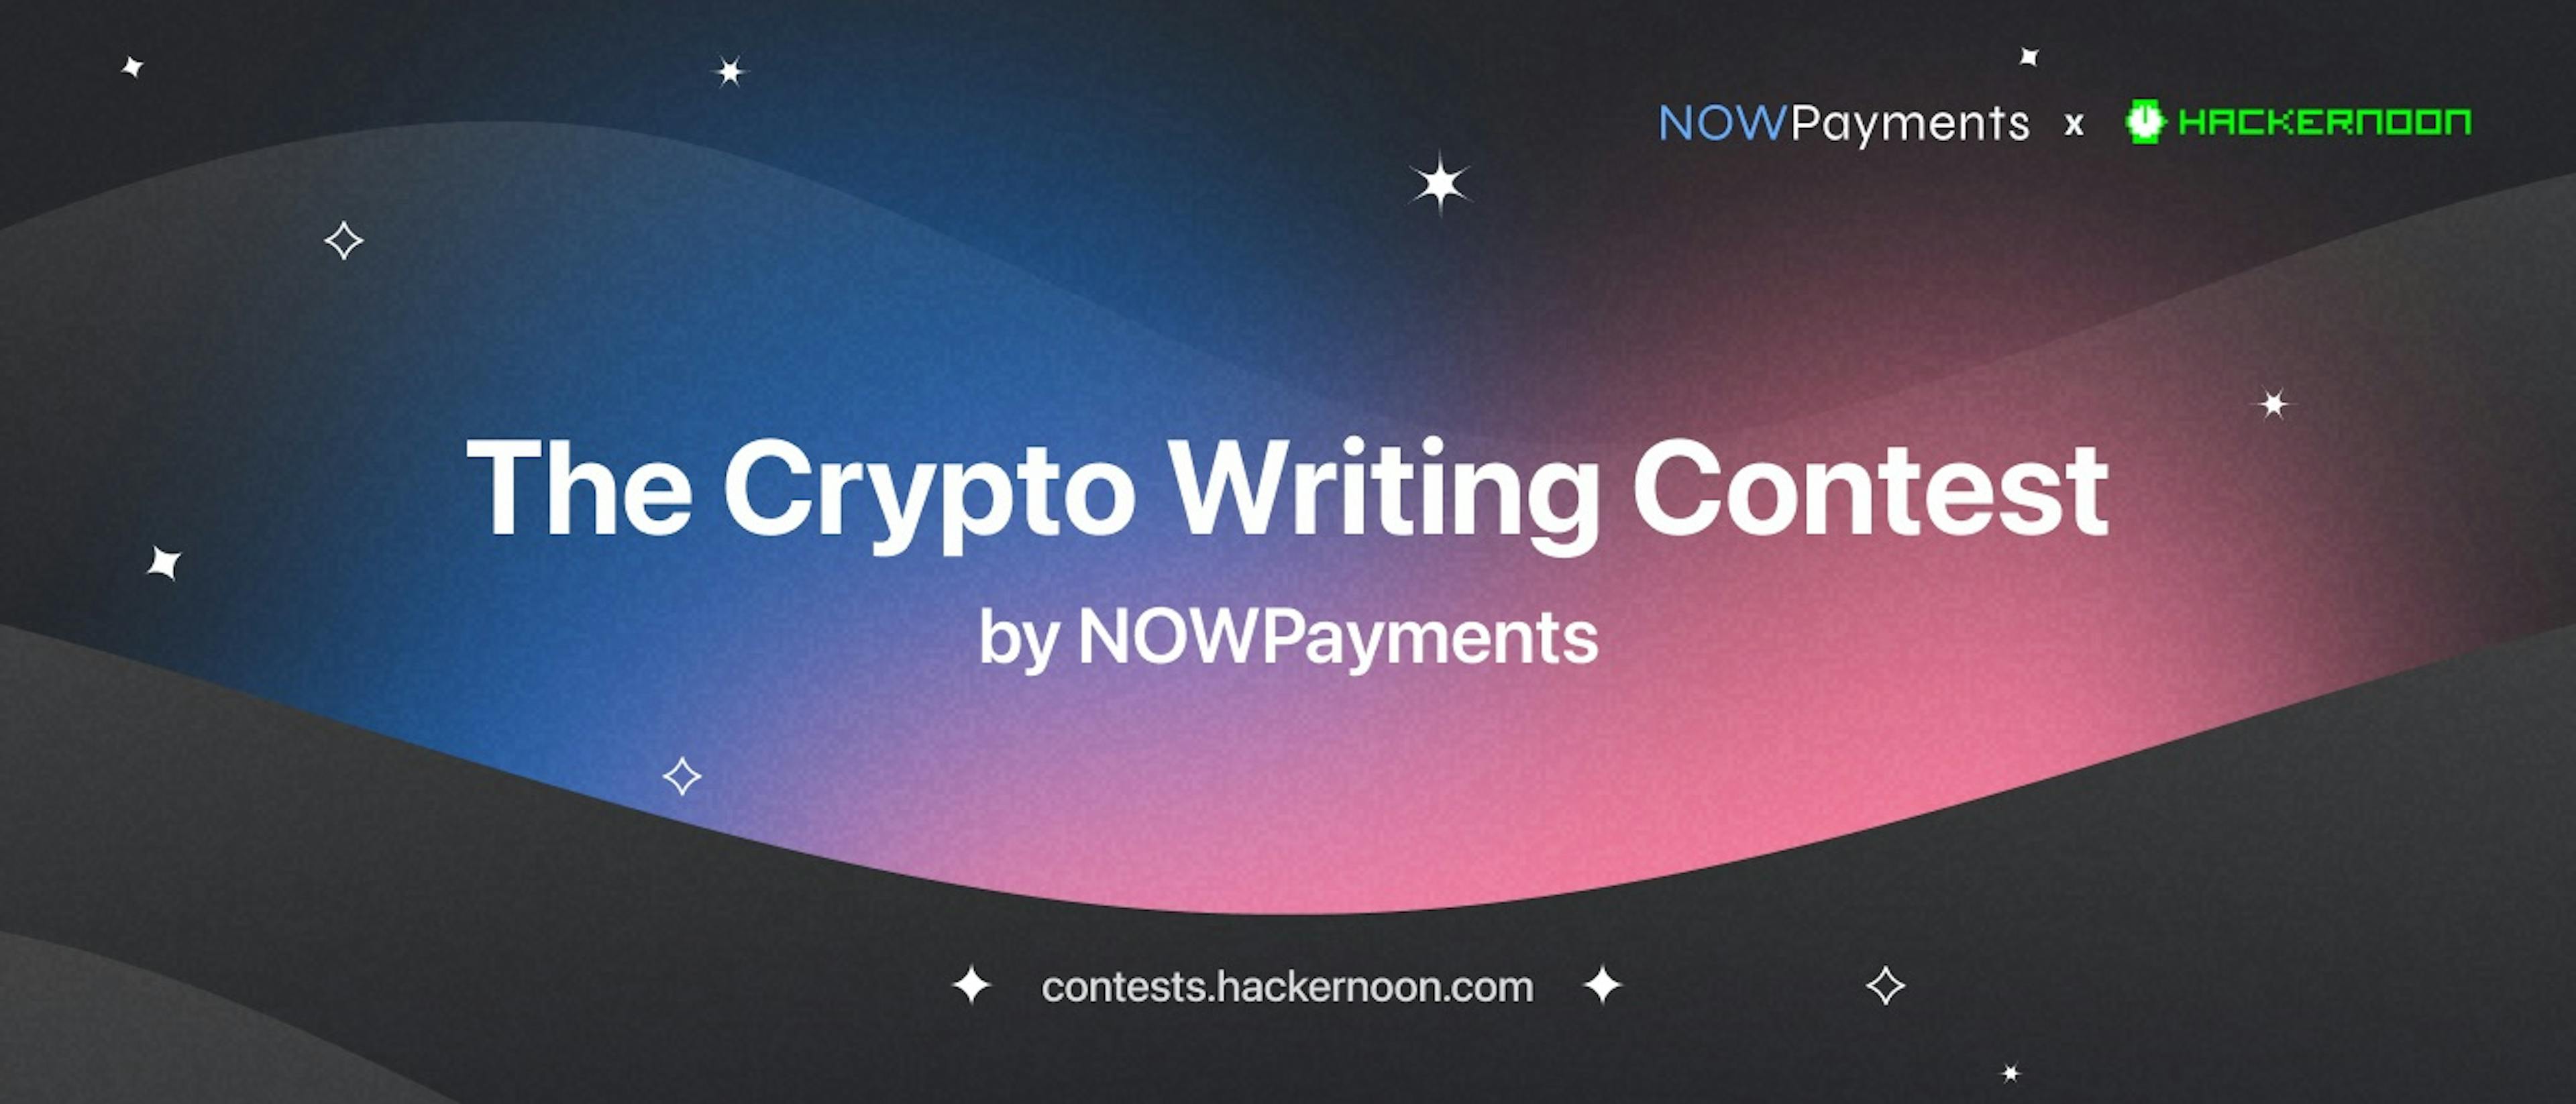 featured image - Cuộc thi viết về tiền điện tử của NOWPayments: Người chiến thắng được công bố!